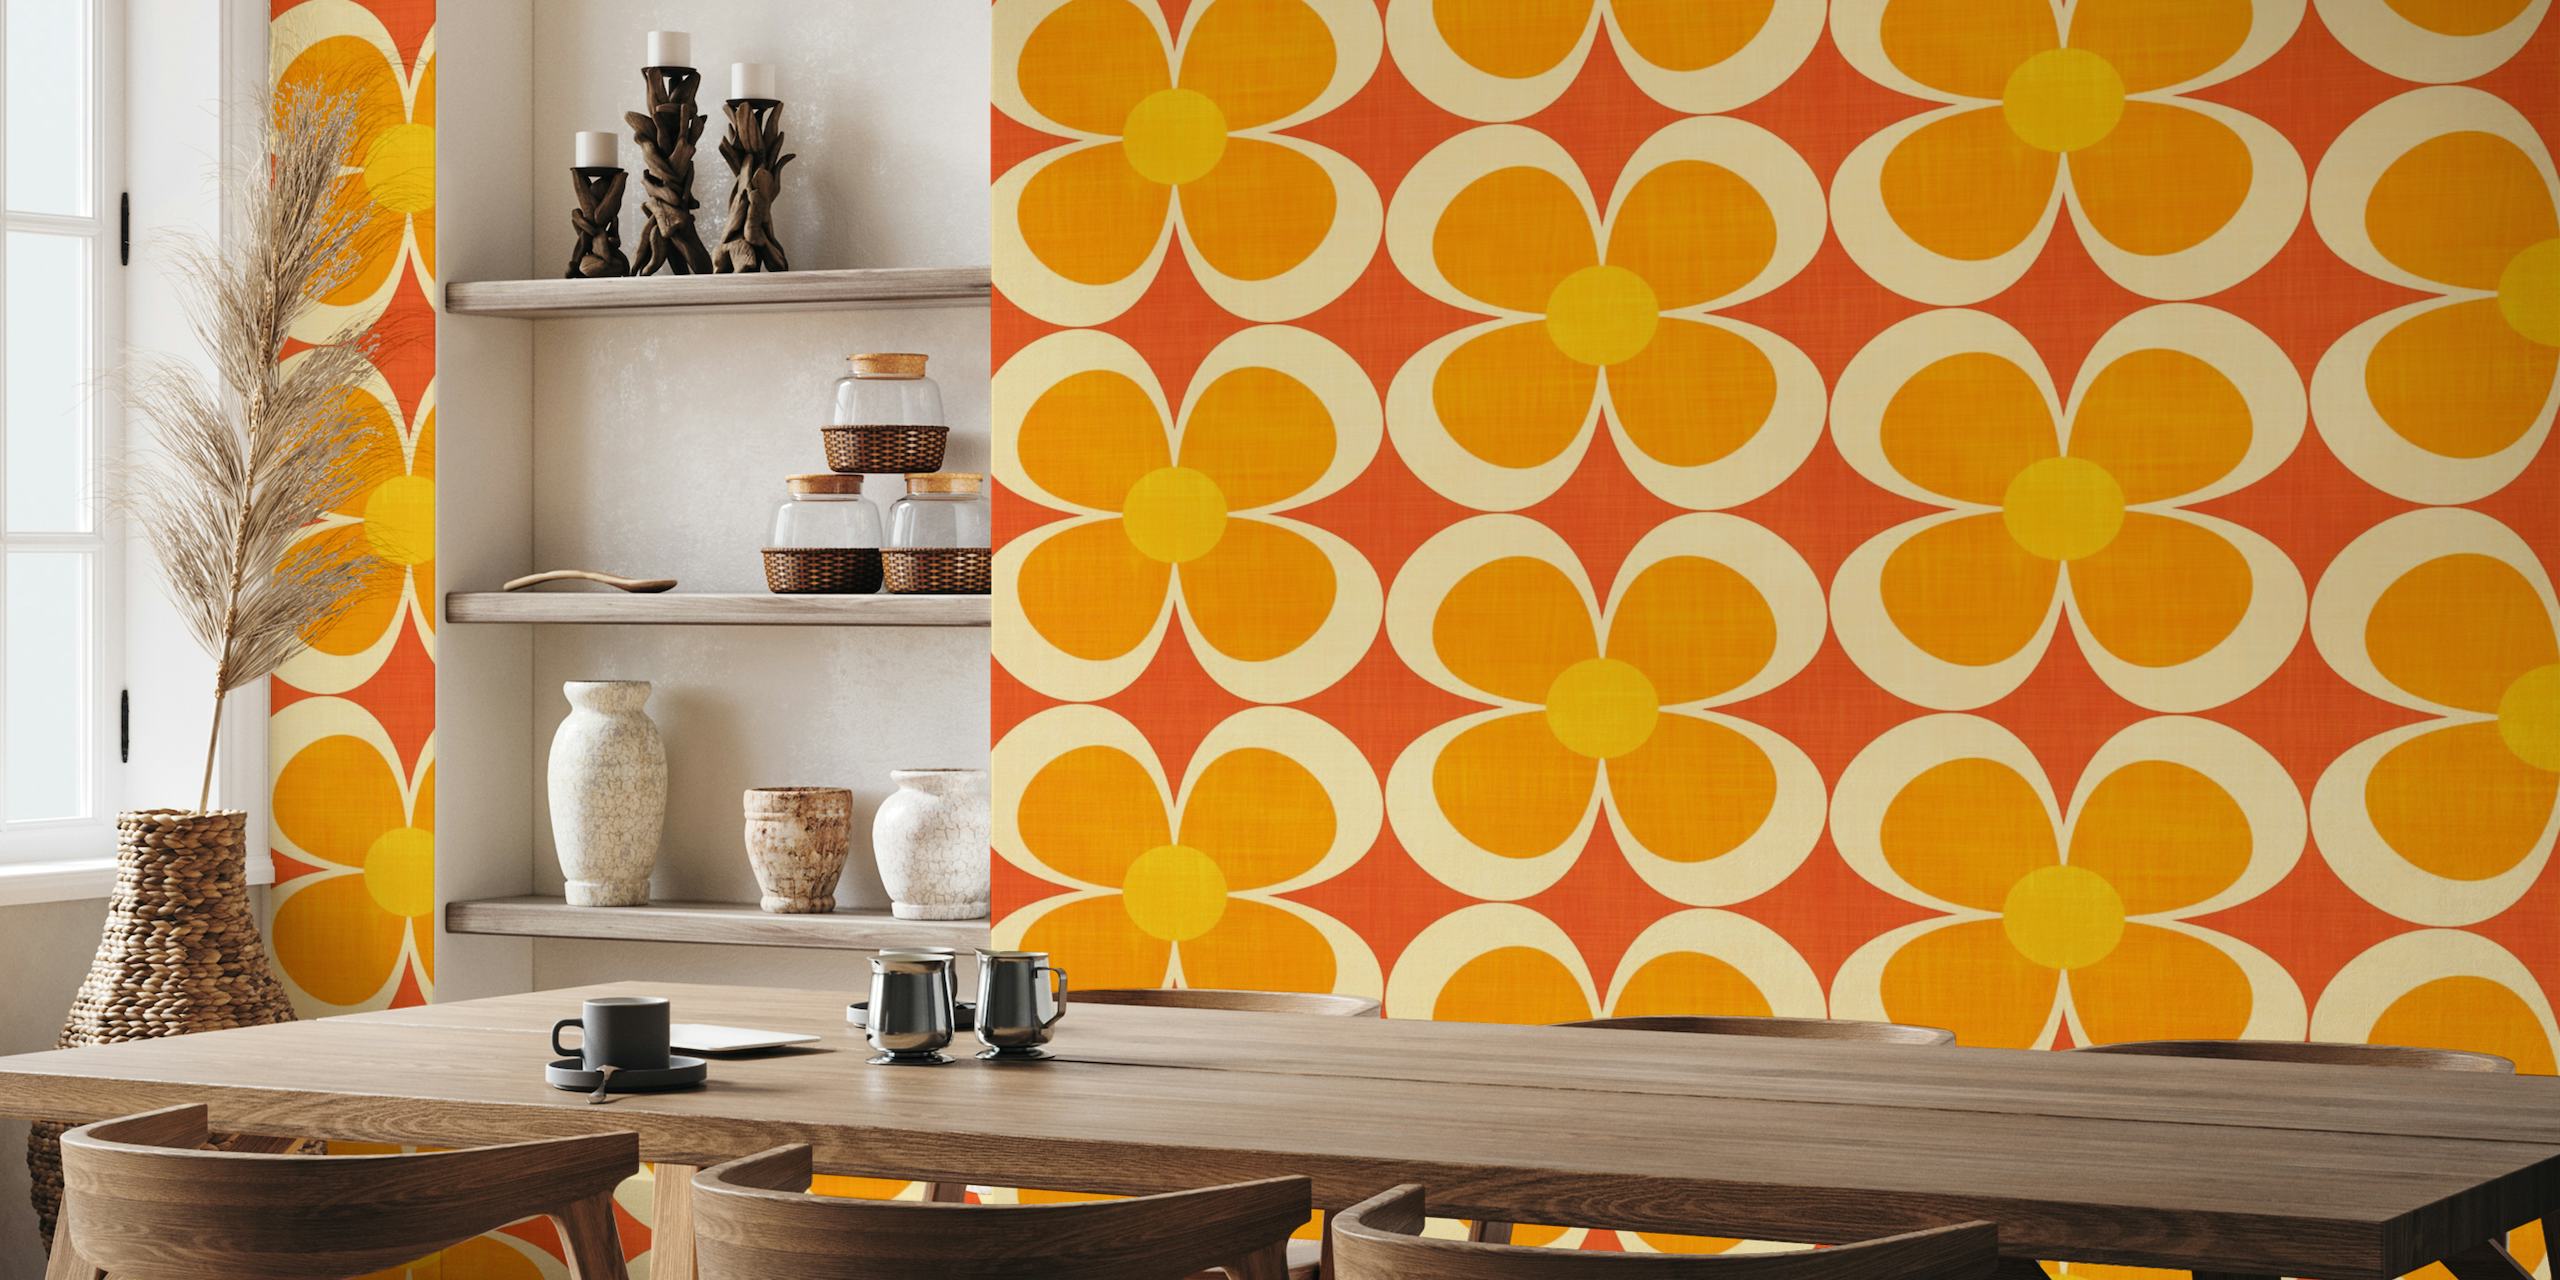 Retro-inspiriertes Groovy Geometric Floral-Wandbild in Orange, Gelb und Rot